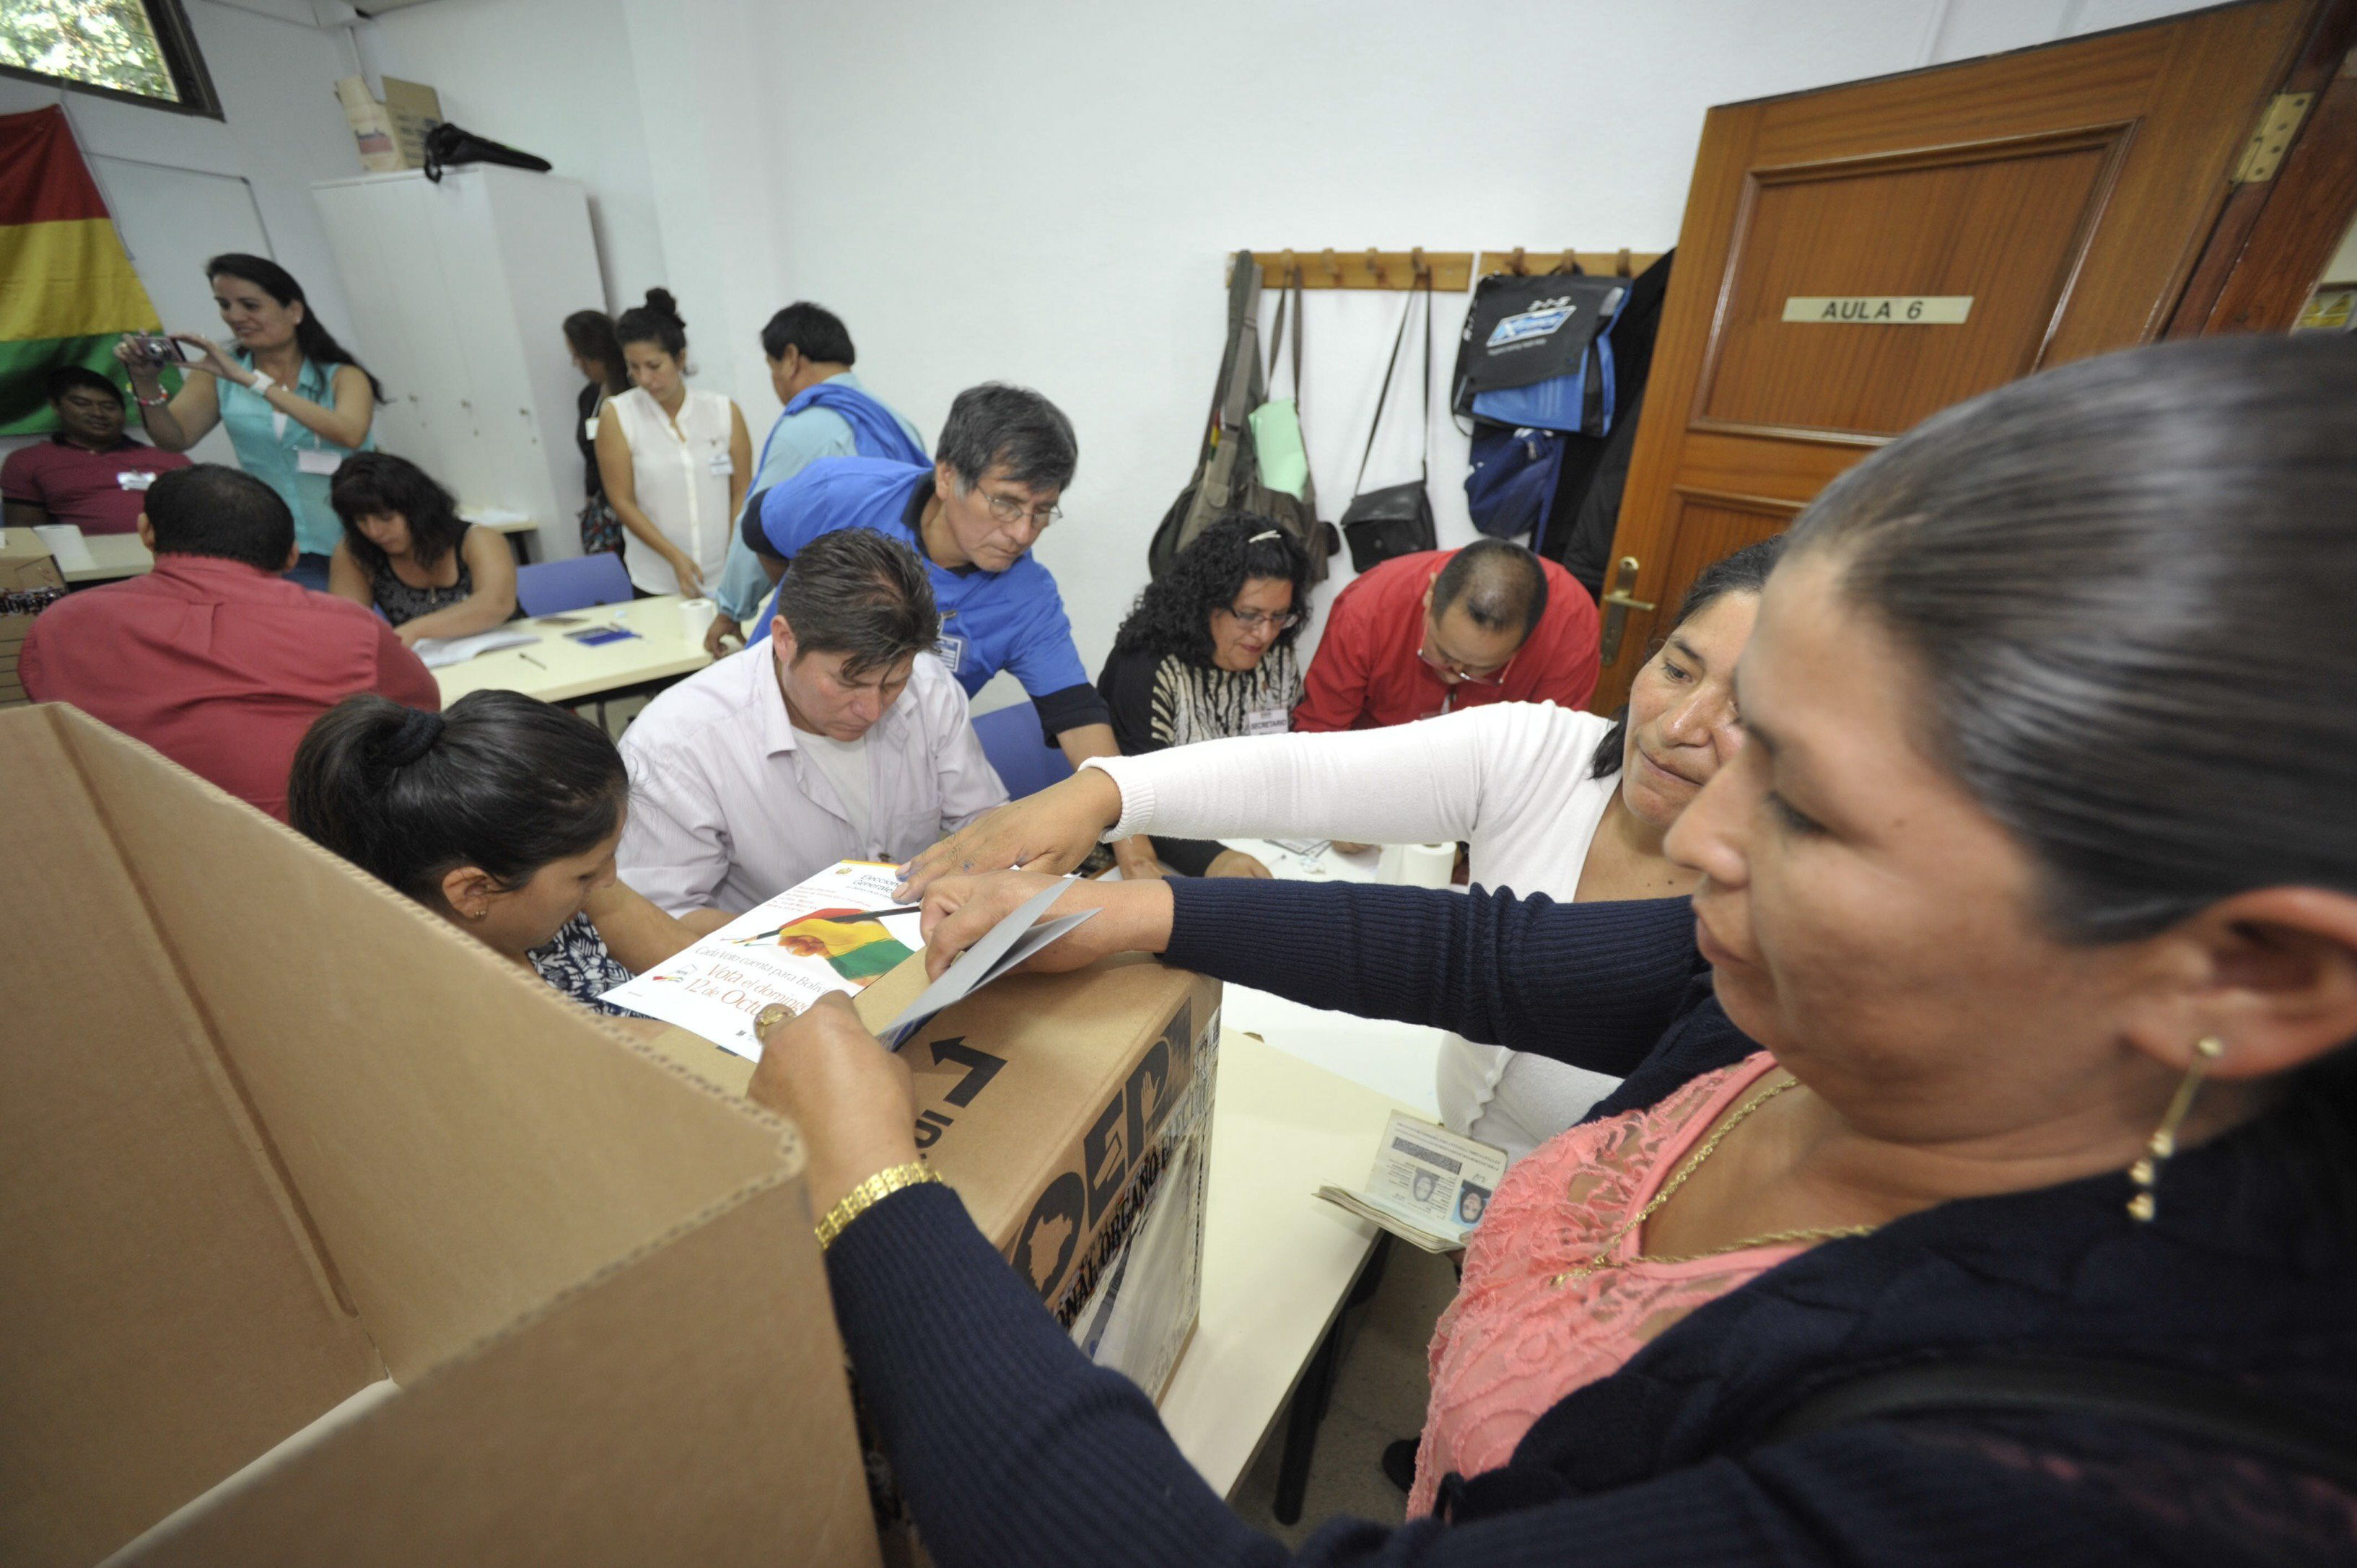 Observadores consideran oportuno prescindir del conteo preliminar en Bolivia